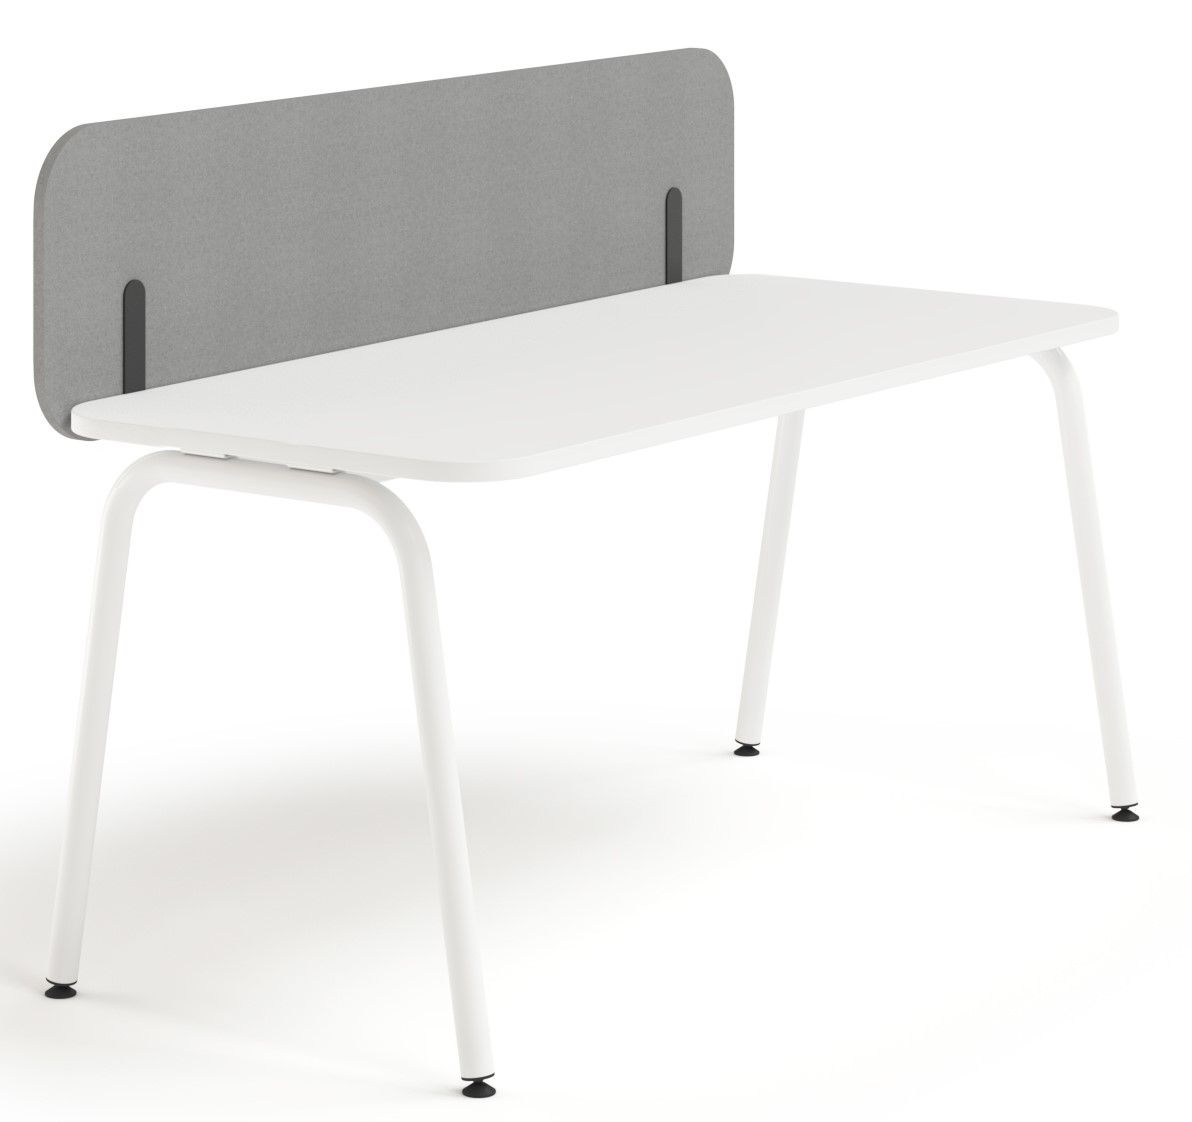 NARBUTAS - Predný akustický panel ROUND PET pre stoly s posuvnou doskou - výška 40 cm